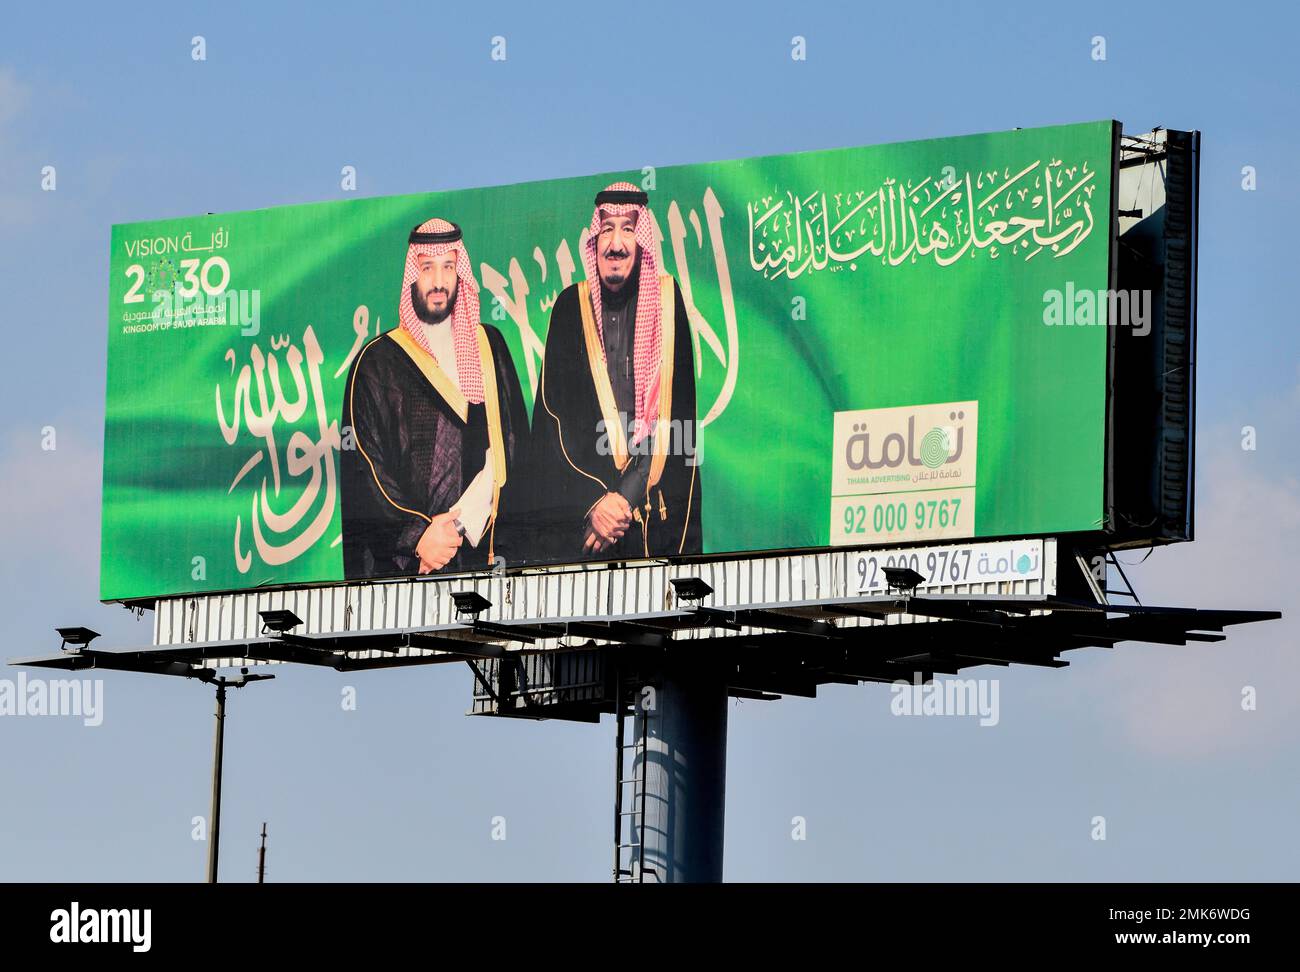 Poster, King Salman bin Abdulaziz Al Saud and Crown Prince Mohammed bin Salman Al Saud on a billboard, Vision 2030, Dammam province Ash-Sharqiyyah Stock Photo